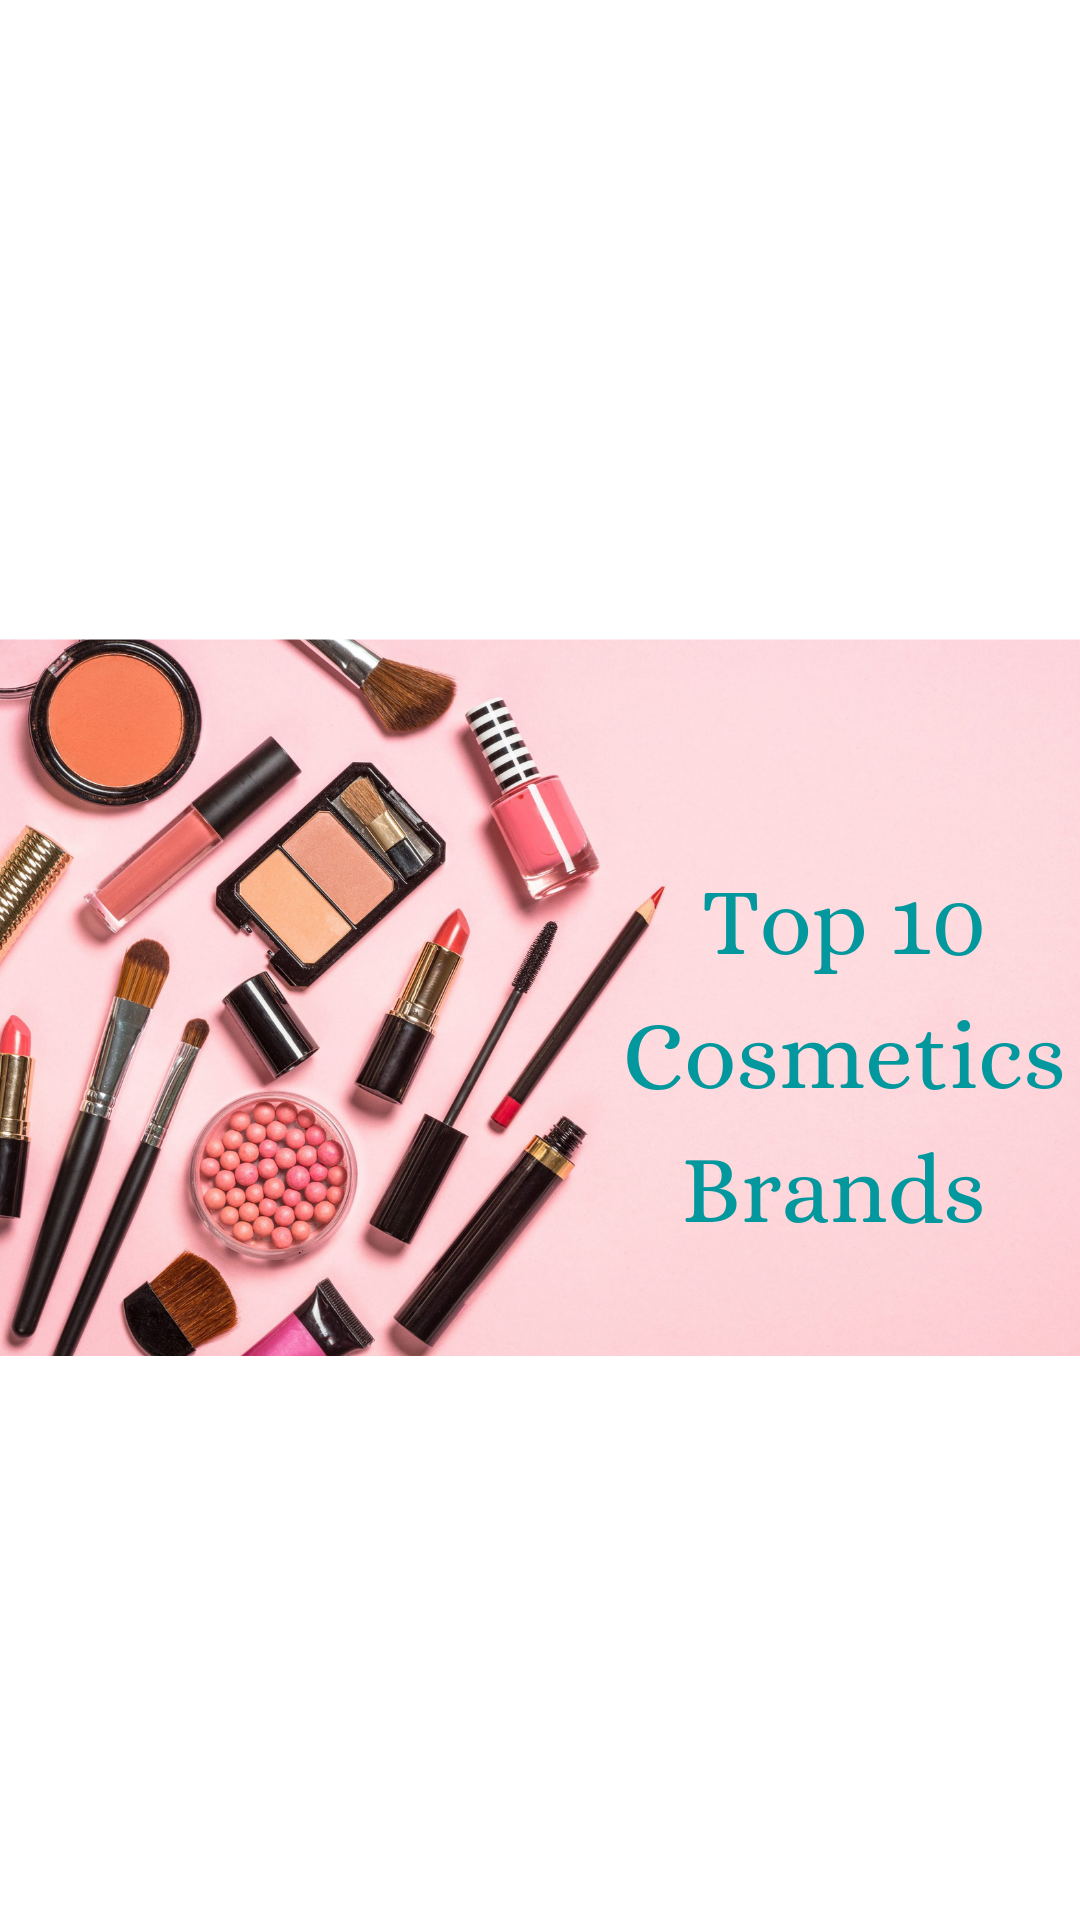 Top 10 Cosmetics Brands